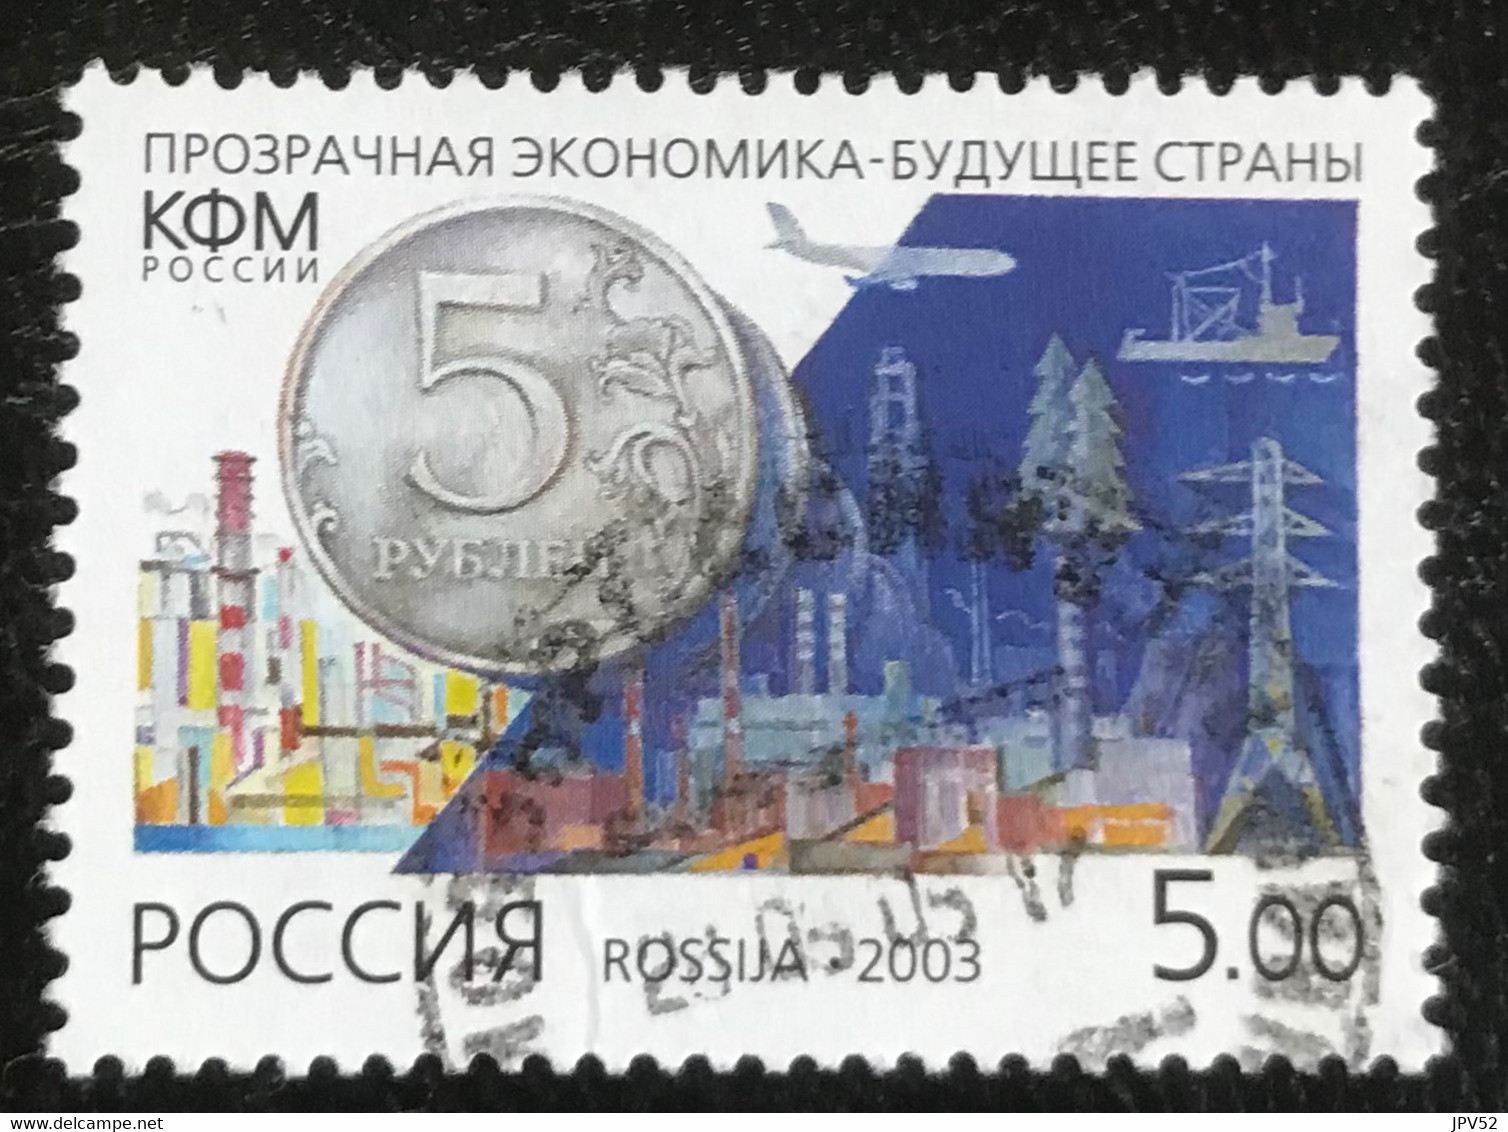 Rossija - Russische Federatie - 11/22 - (°)used - 2003 - Michel 1095 - Transparante Economie - Gebruikt